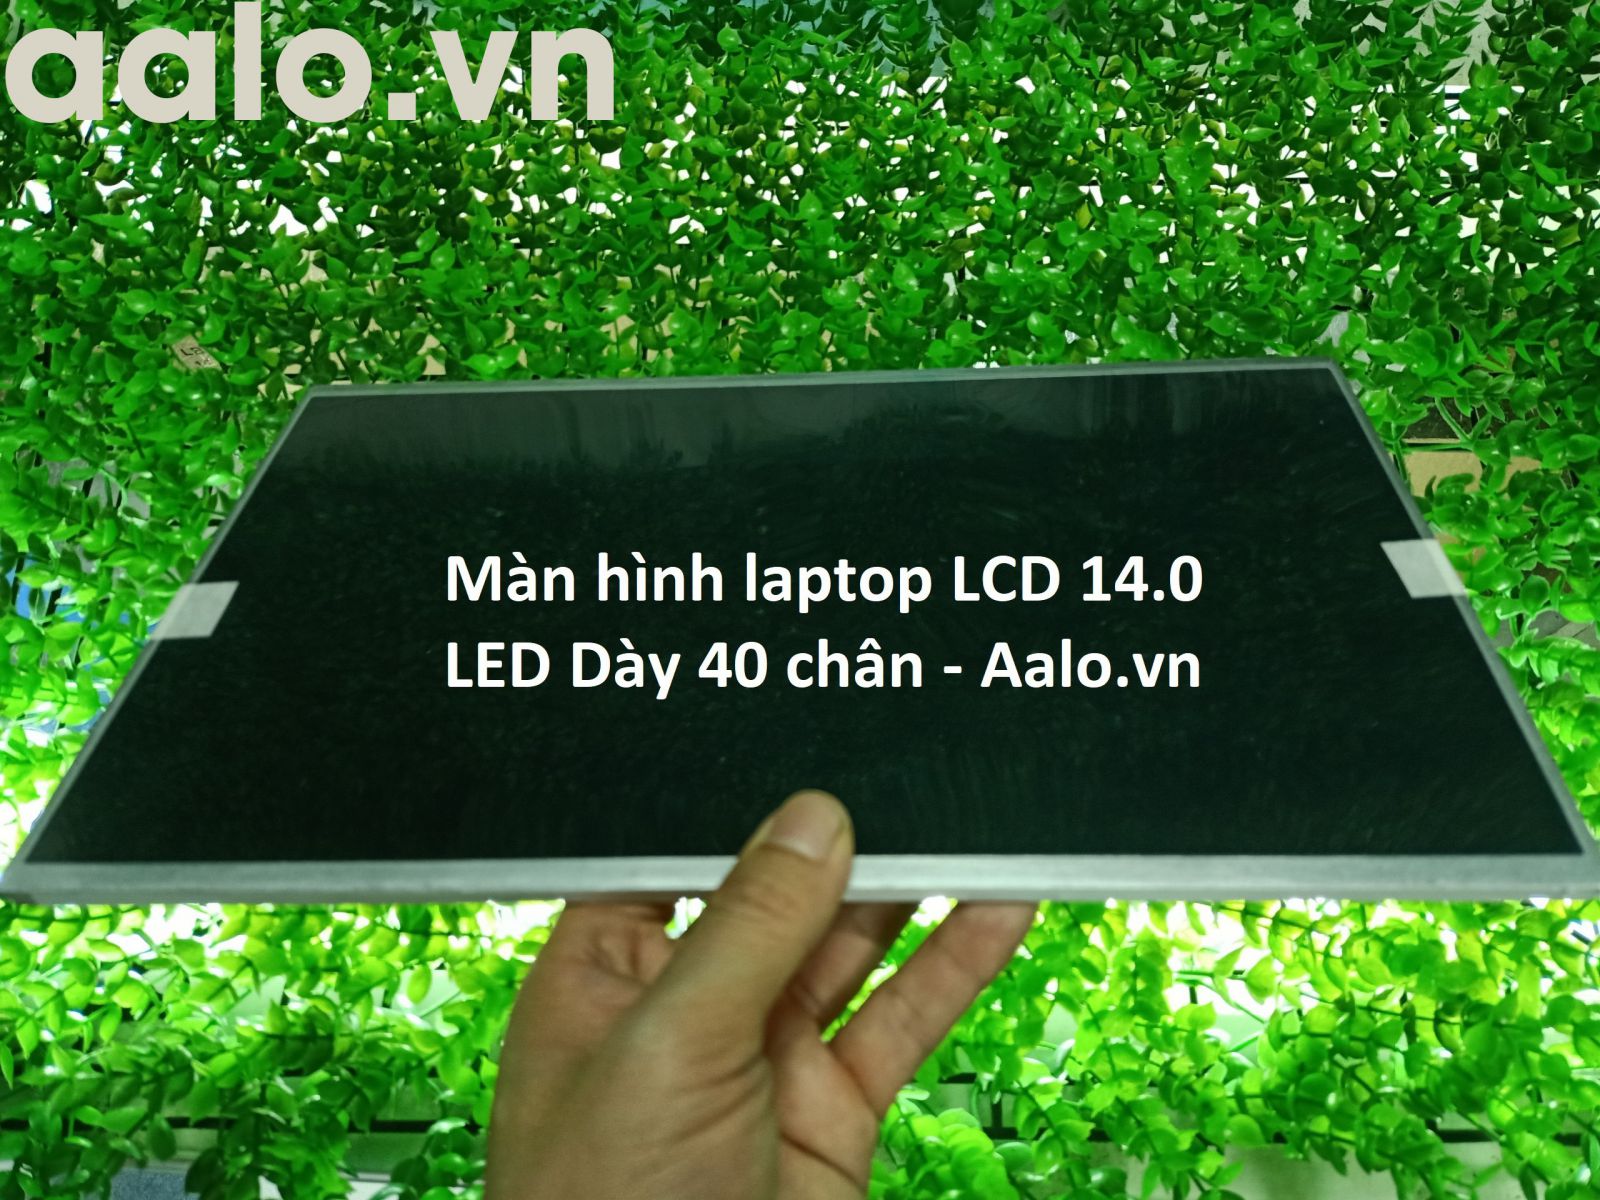 Màn hình laptop Dell Inspiron 1400, 1464 - Aalo.vn